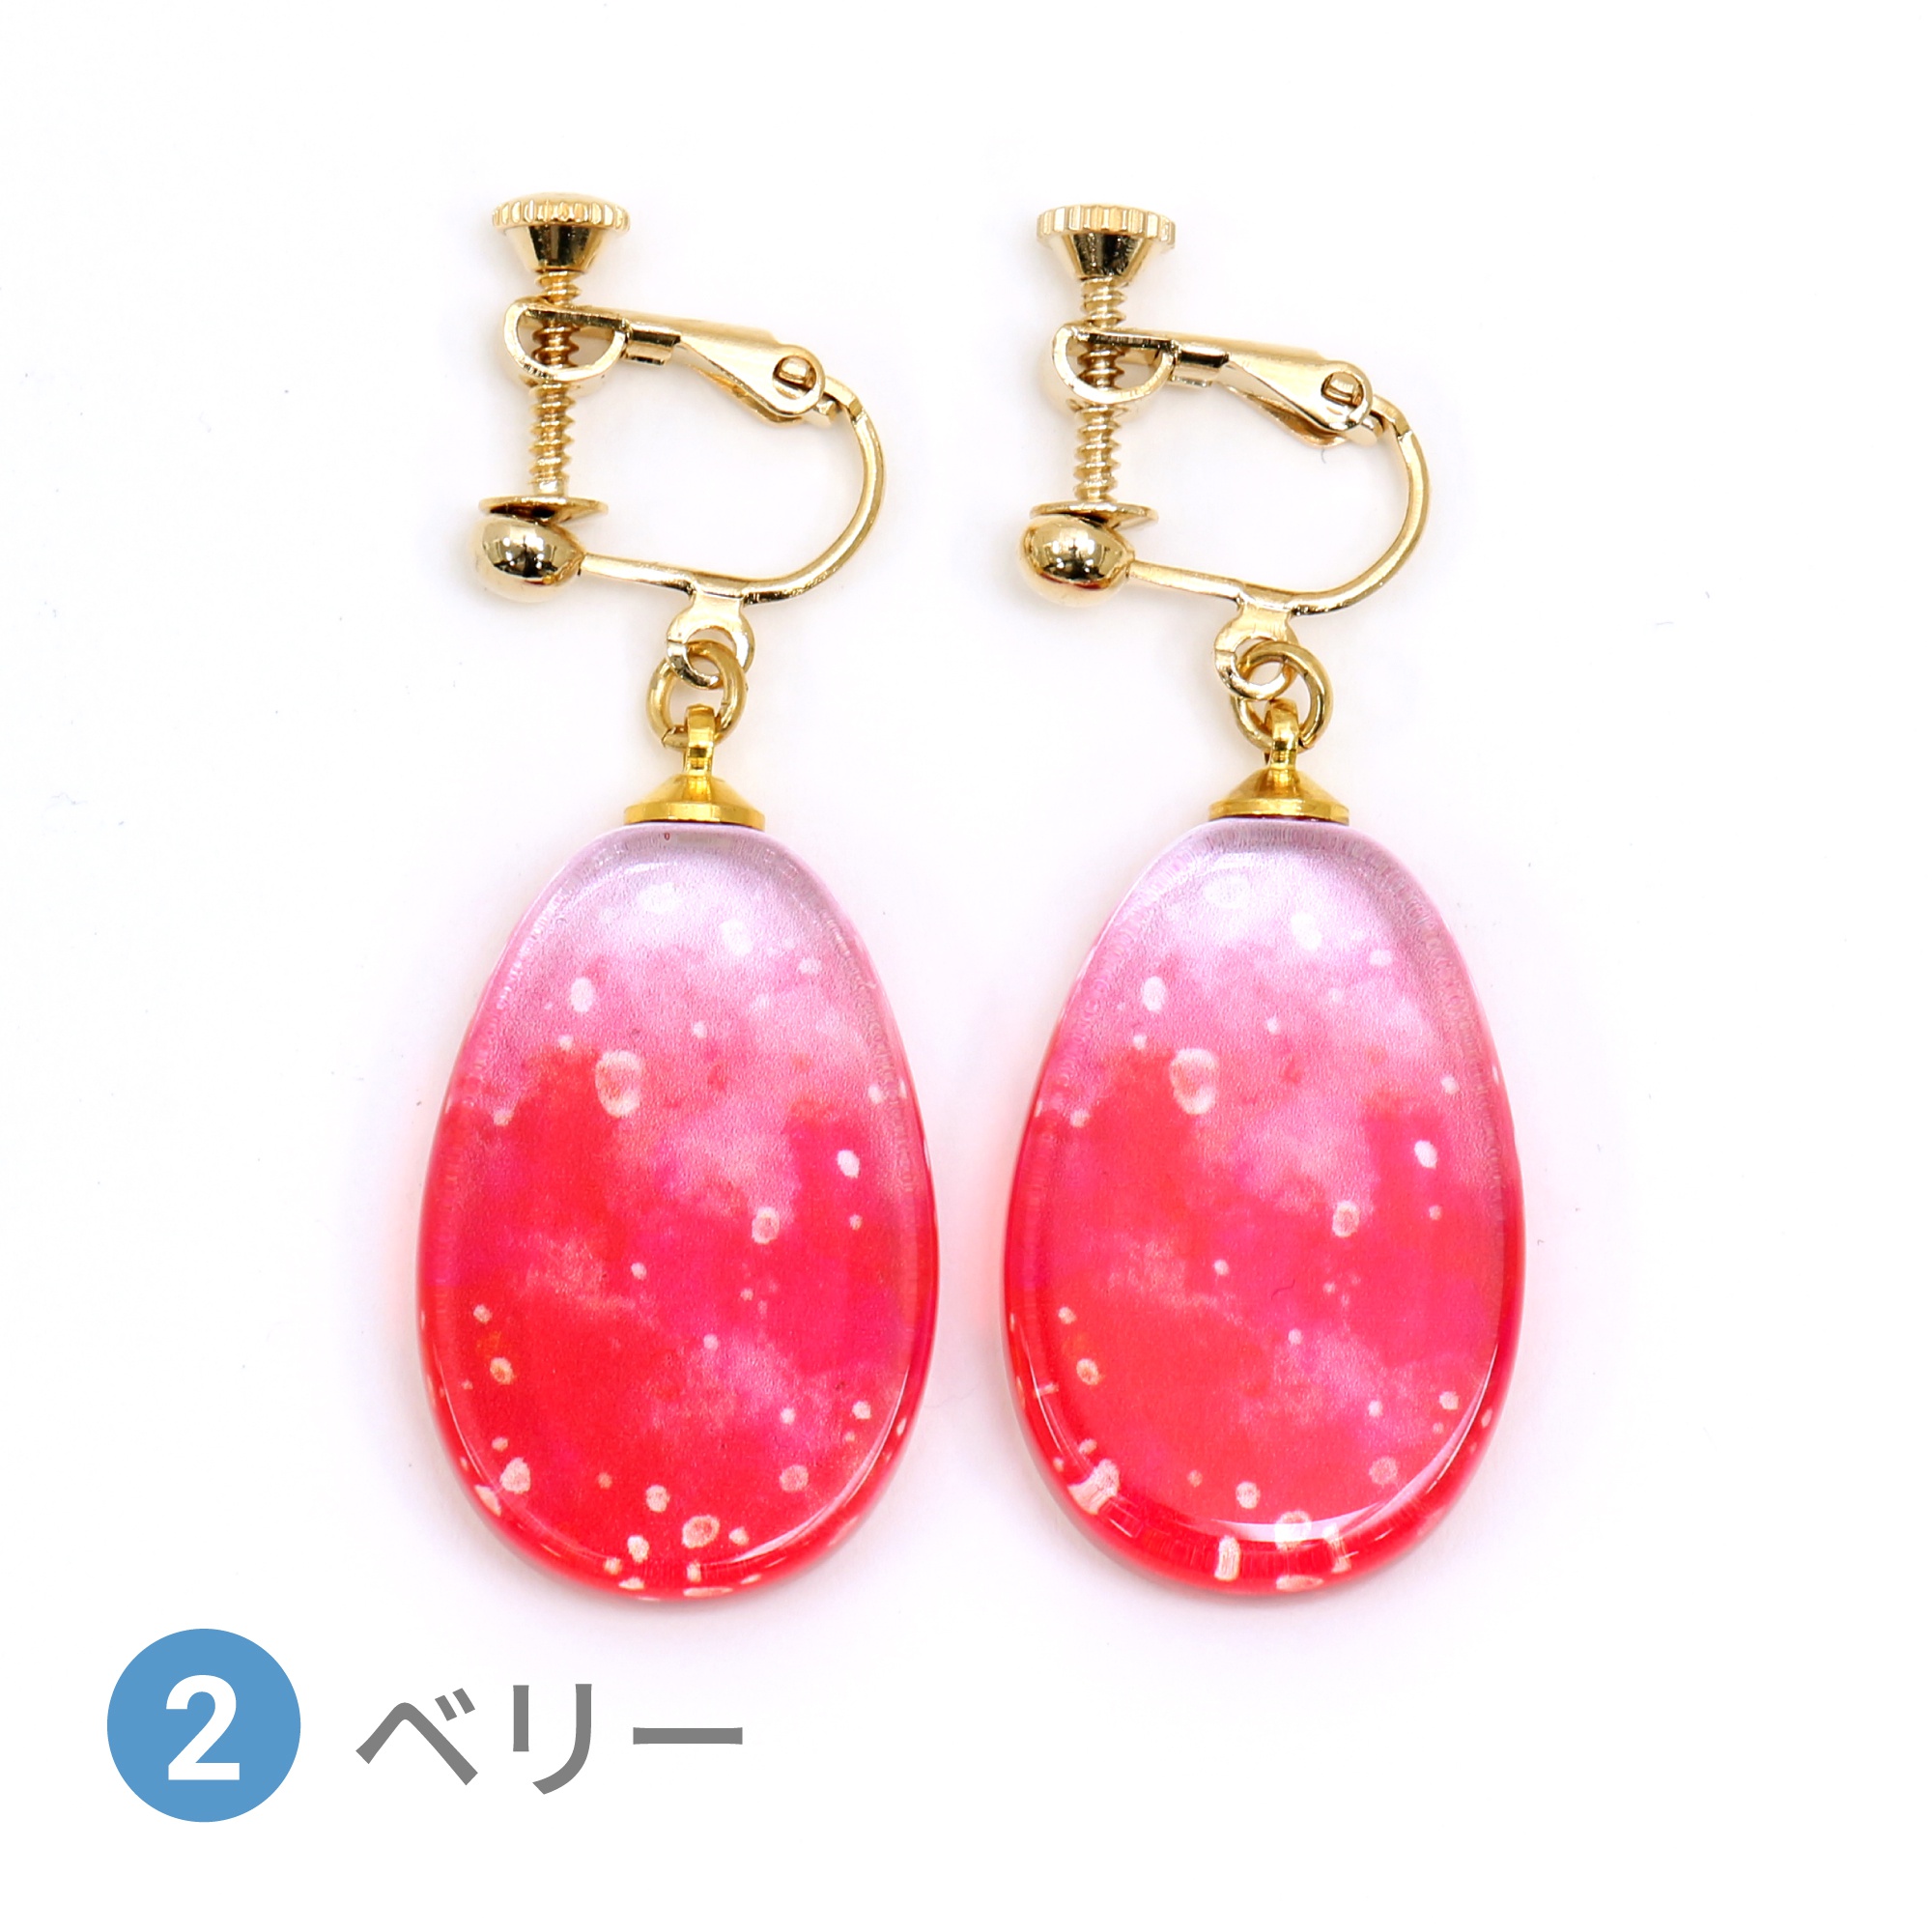 Glass accessories Earring SODA berry drop shape